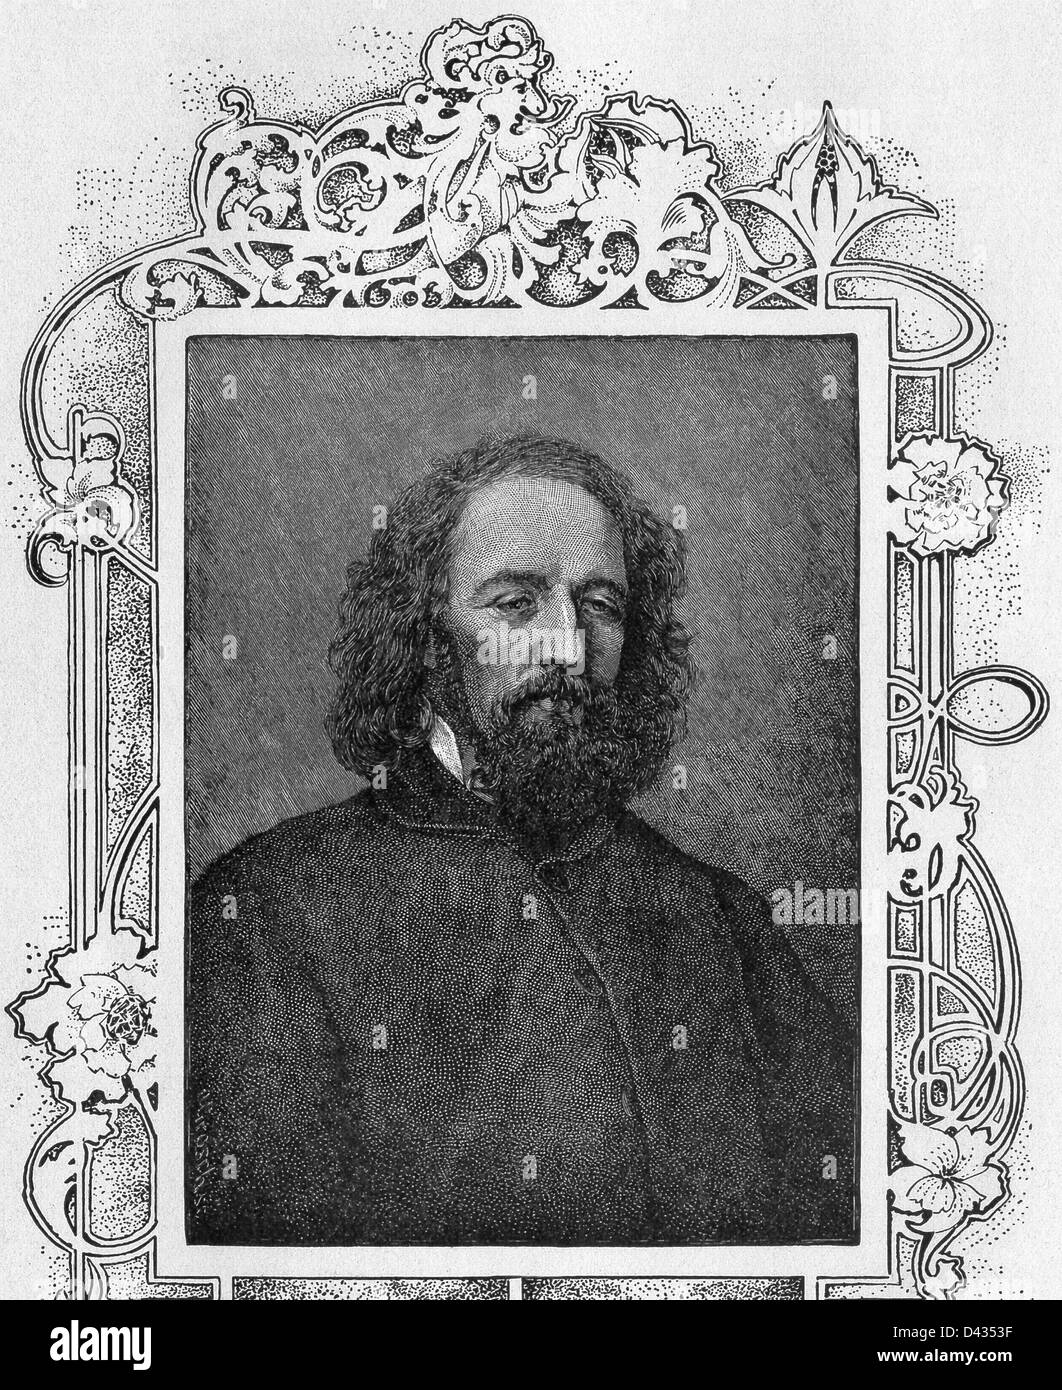 Alfred Lord Tennyson (1809-1892) sirvió como poeta laureado por Gran Bretaña e Irlanda durante gran parte del reinado de la Reina Victoria. Foto de stock